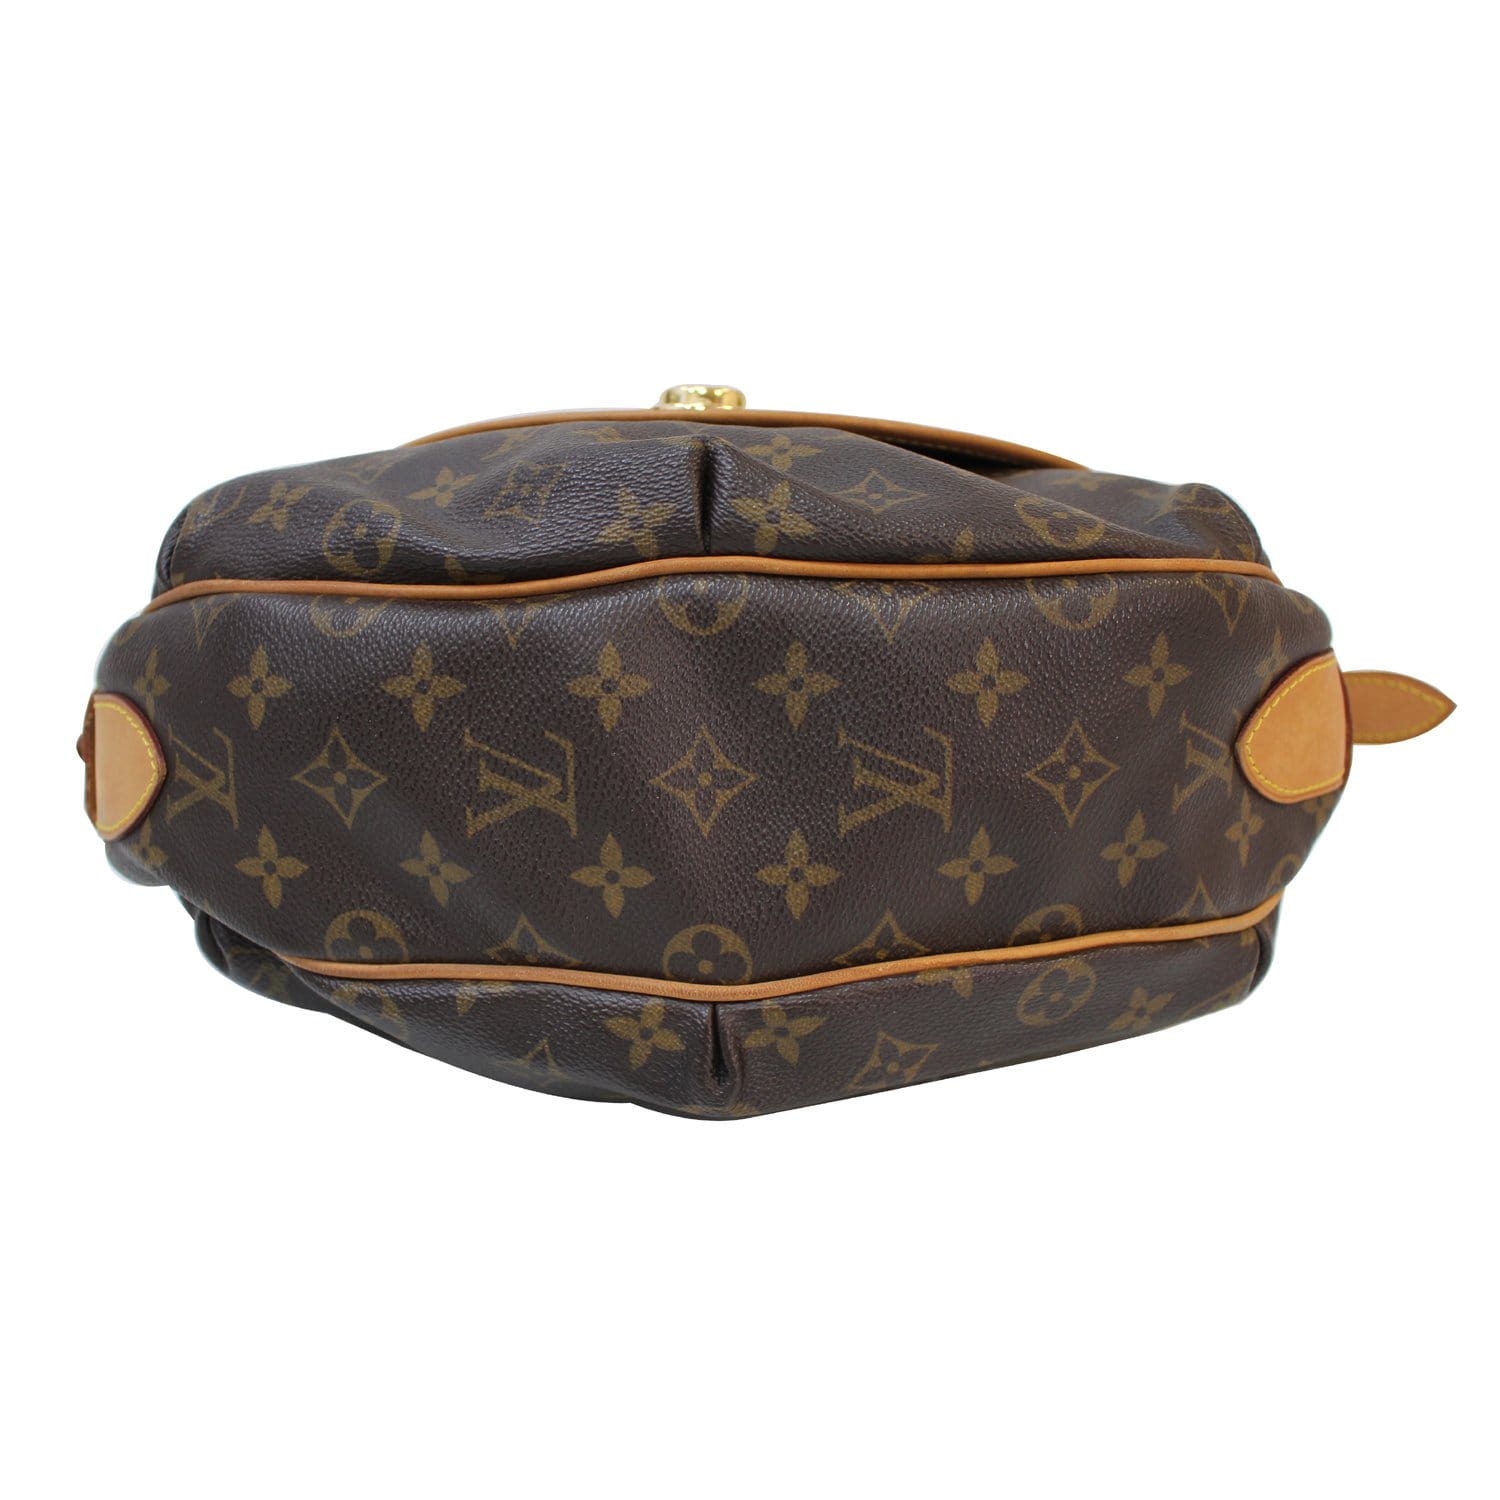 Authentic Louis Vuitton Tulum PM Shoulder bag brown #17188